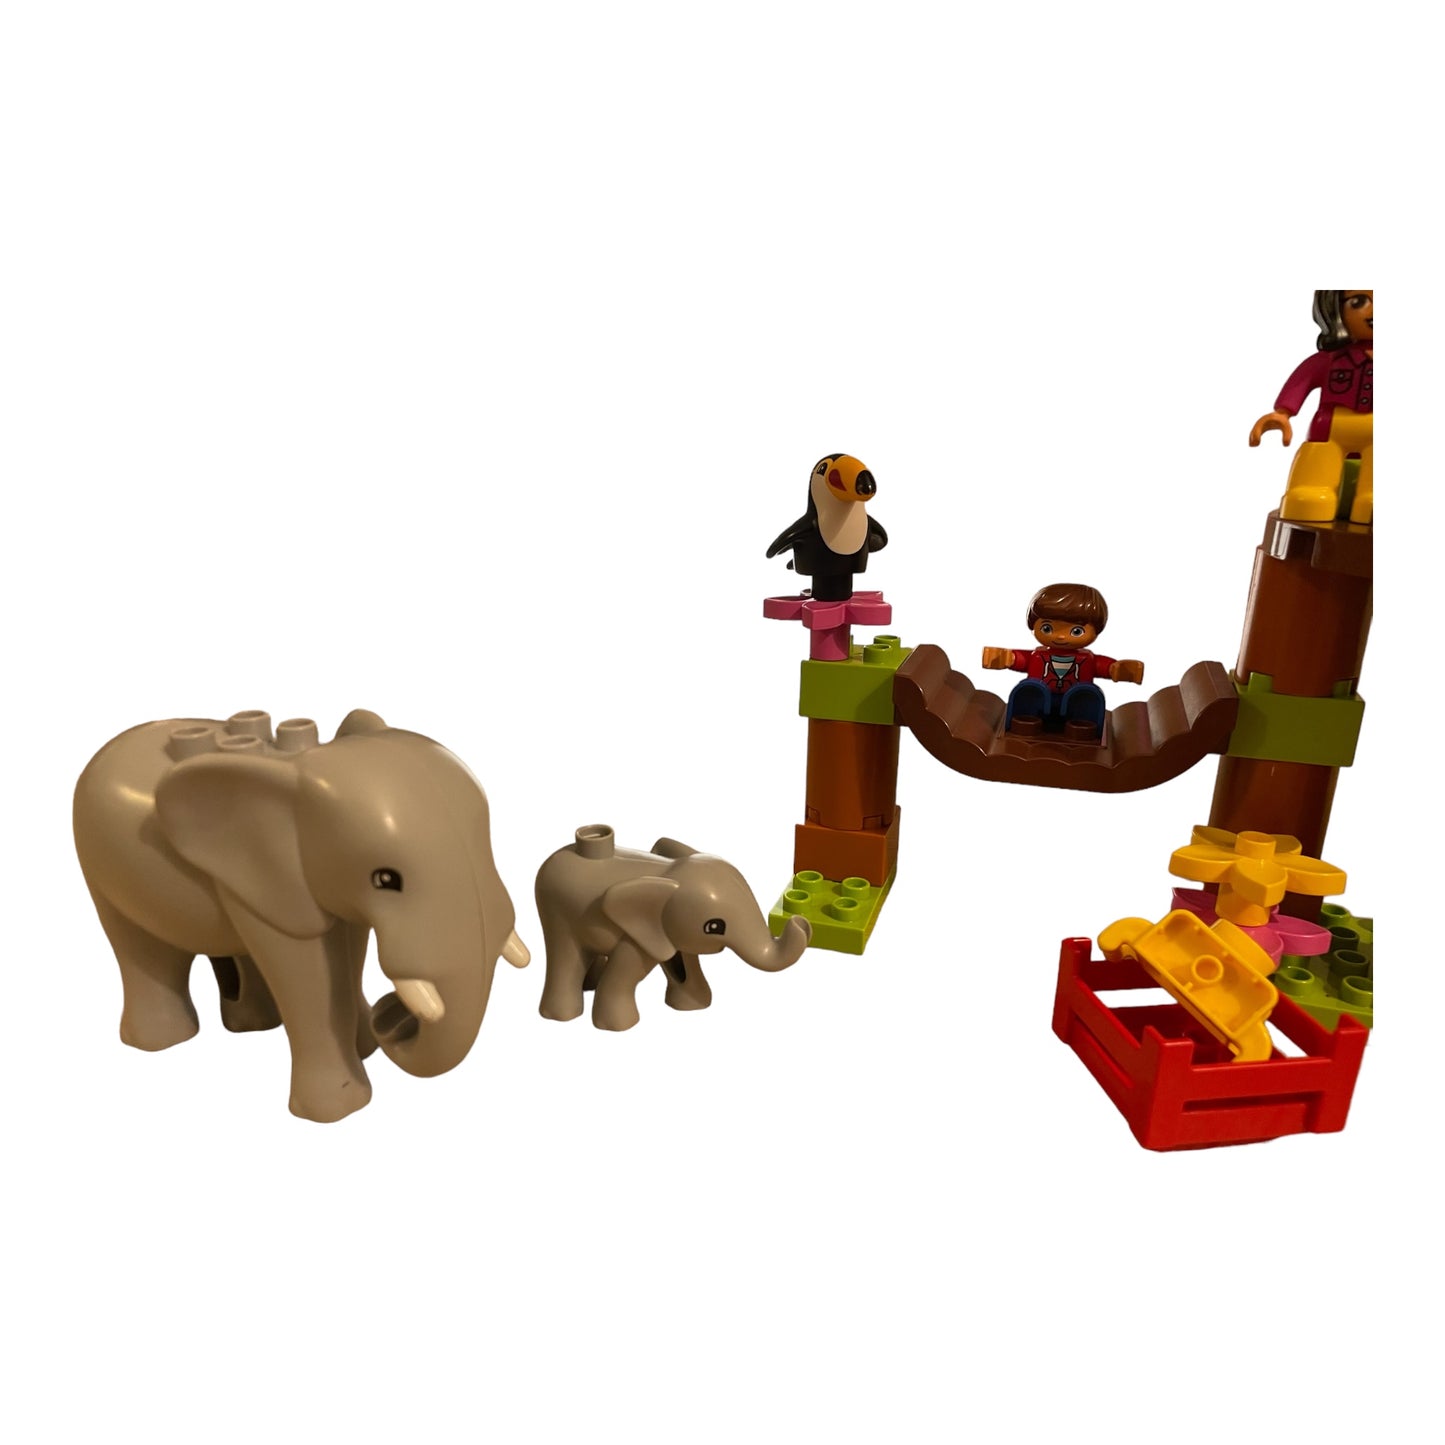 LEGO Duplo L'île tropicale - 10906